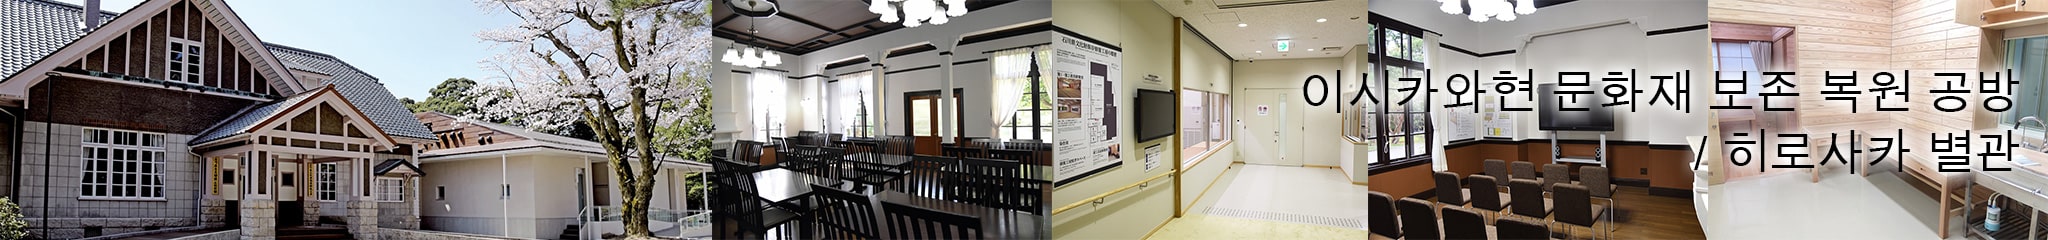 이시카와현 문화재 보존 복원 공방 / 히로사카 별관